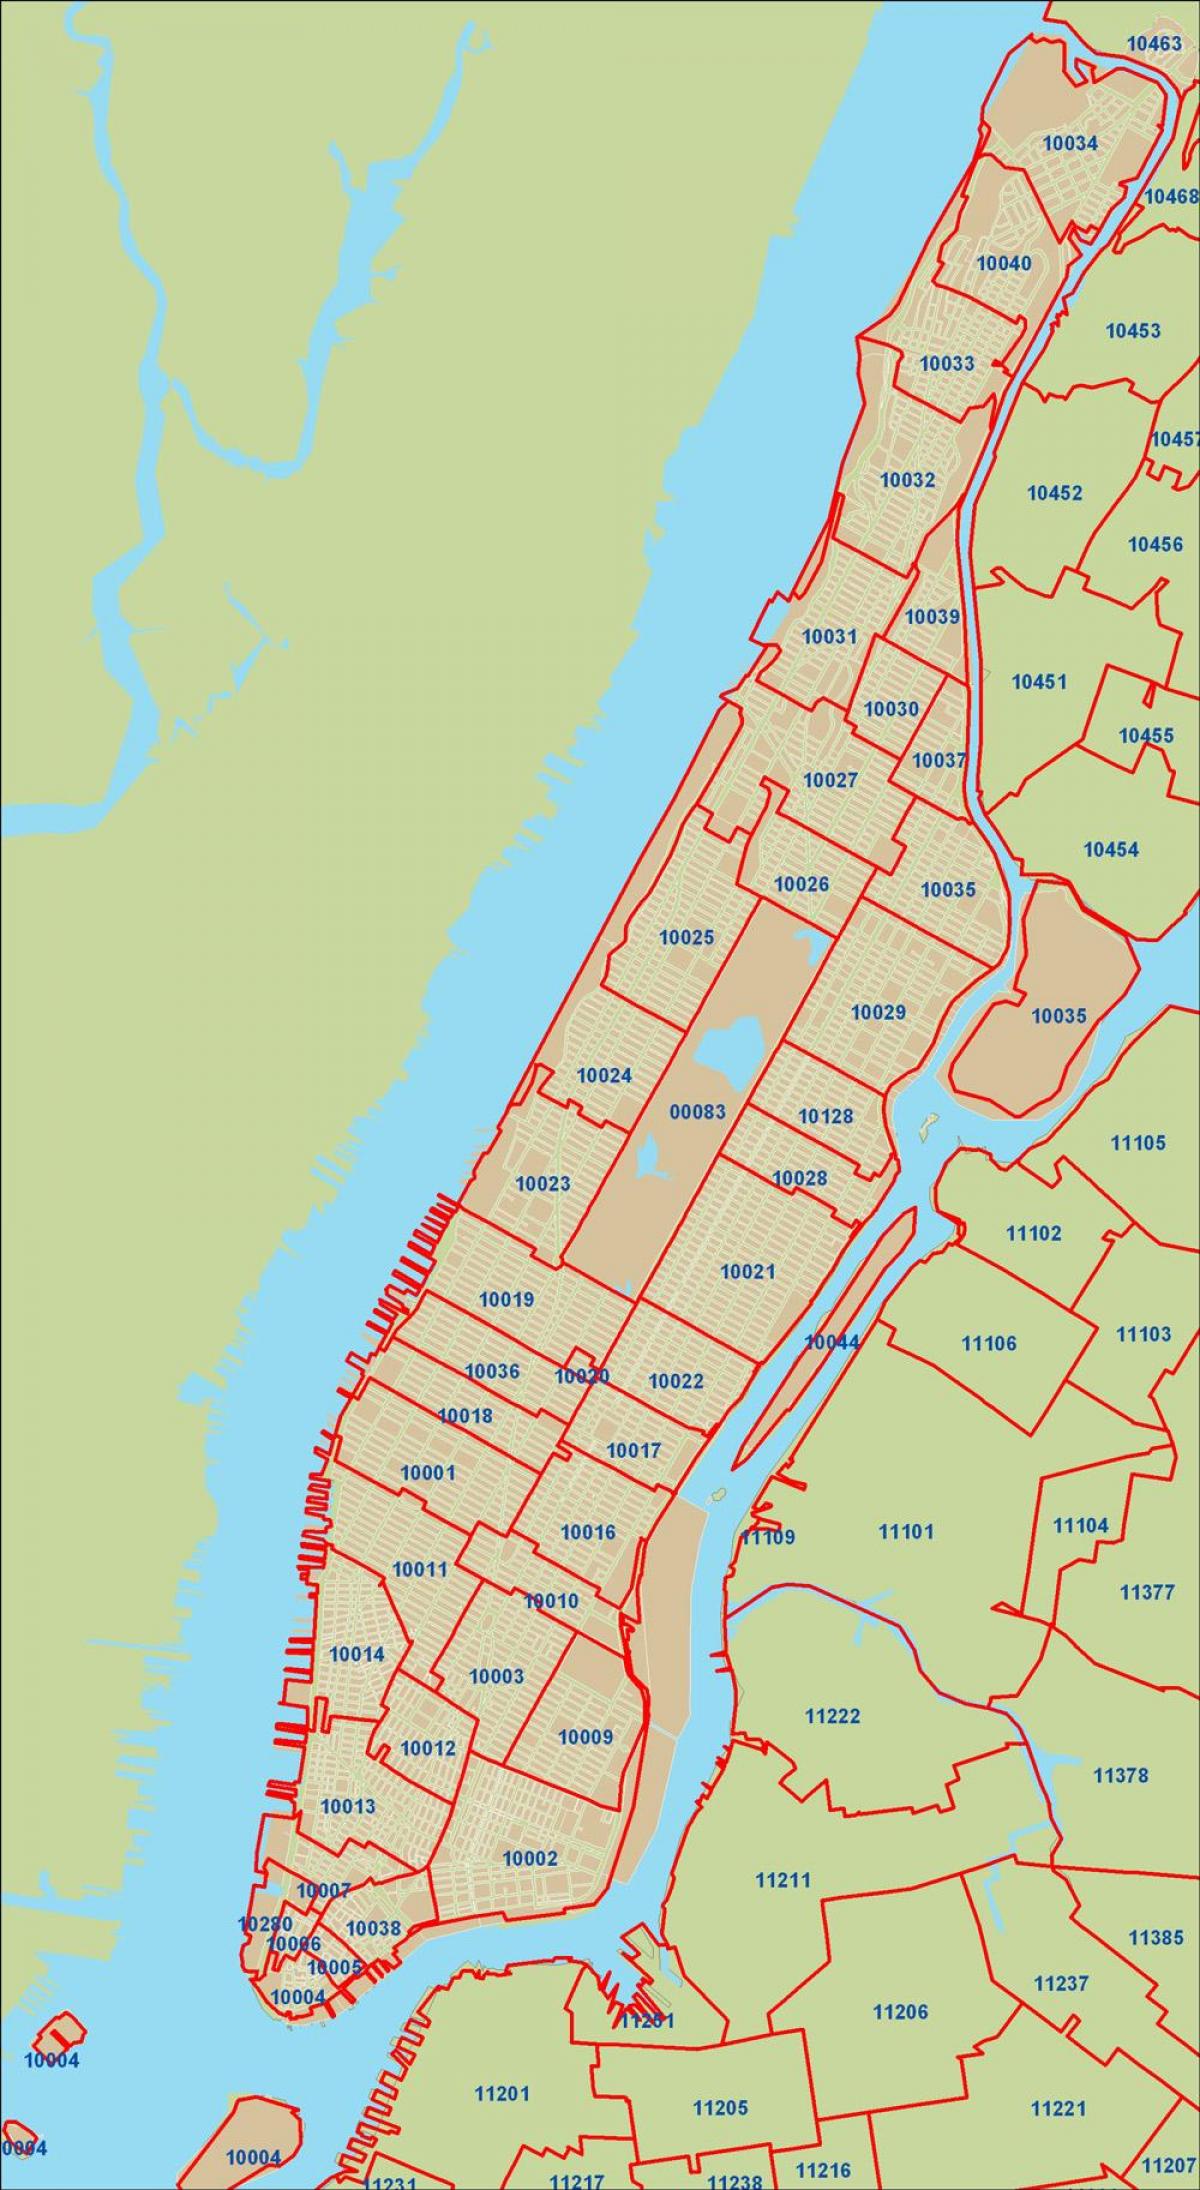 NYC posta kodu göster Manhattan